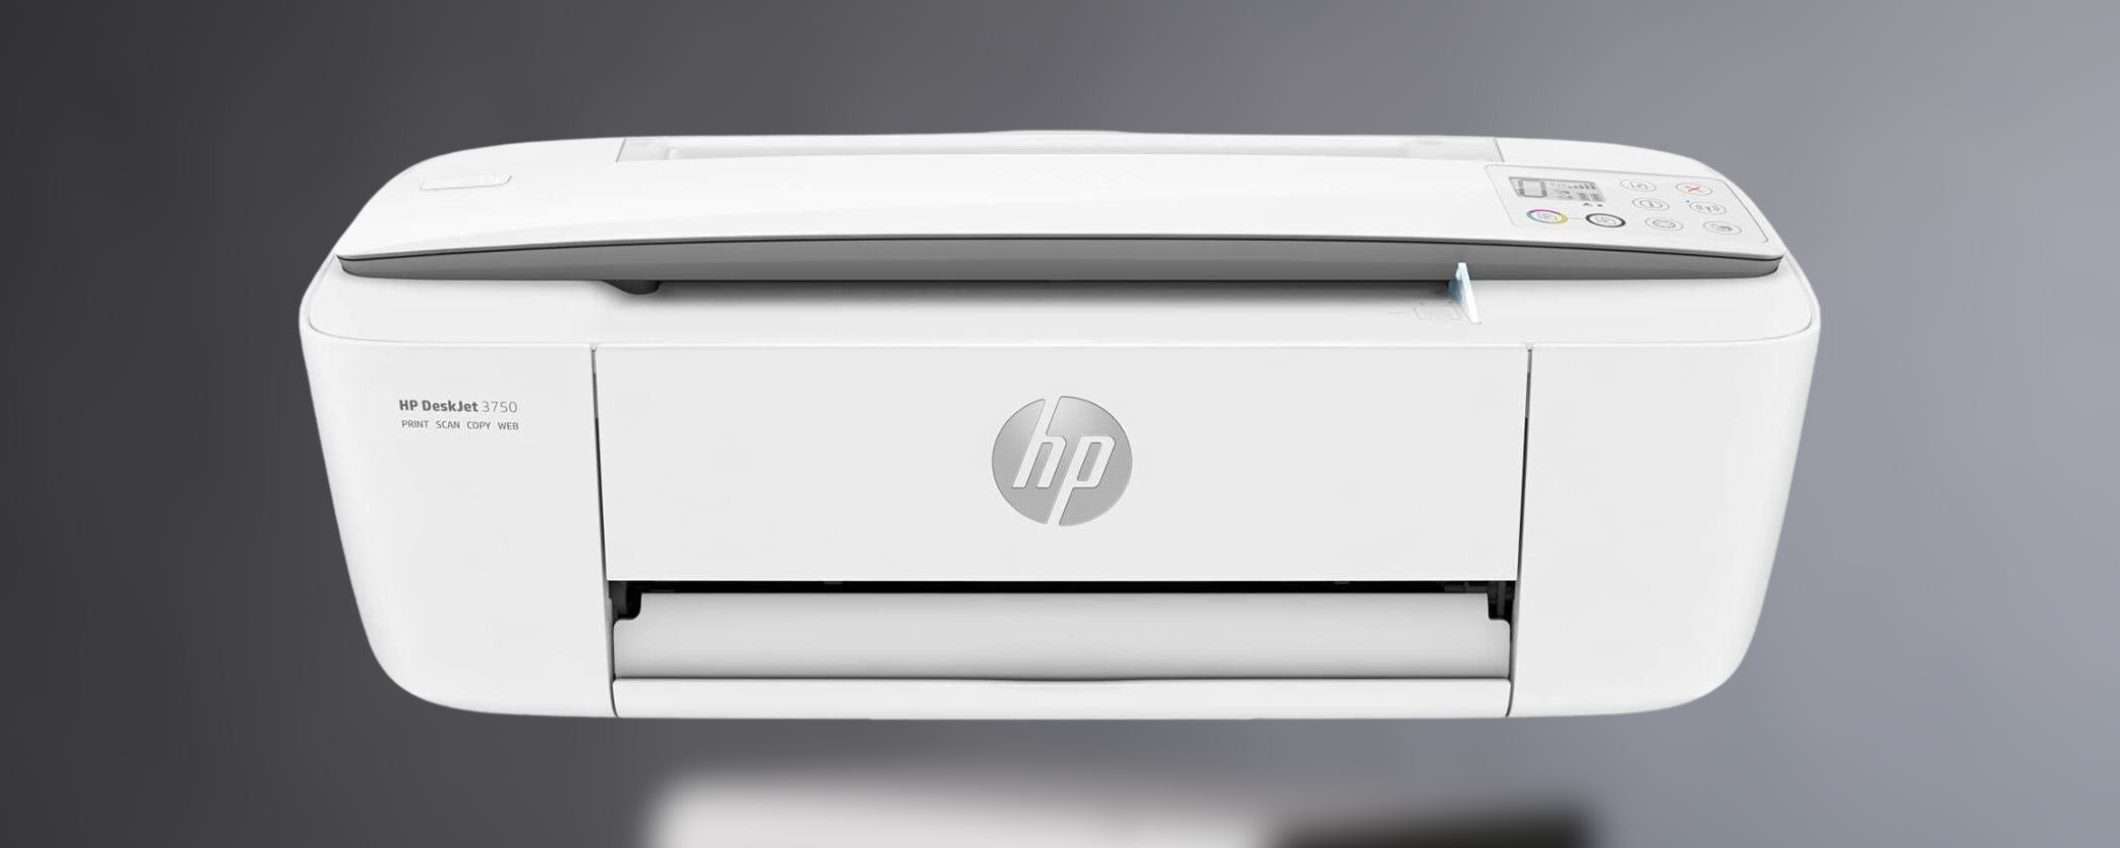 Stampante fotografica HP multifunzione a PREZZO OUTLET su Amazon (-29%)